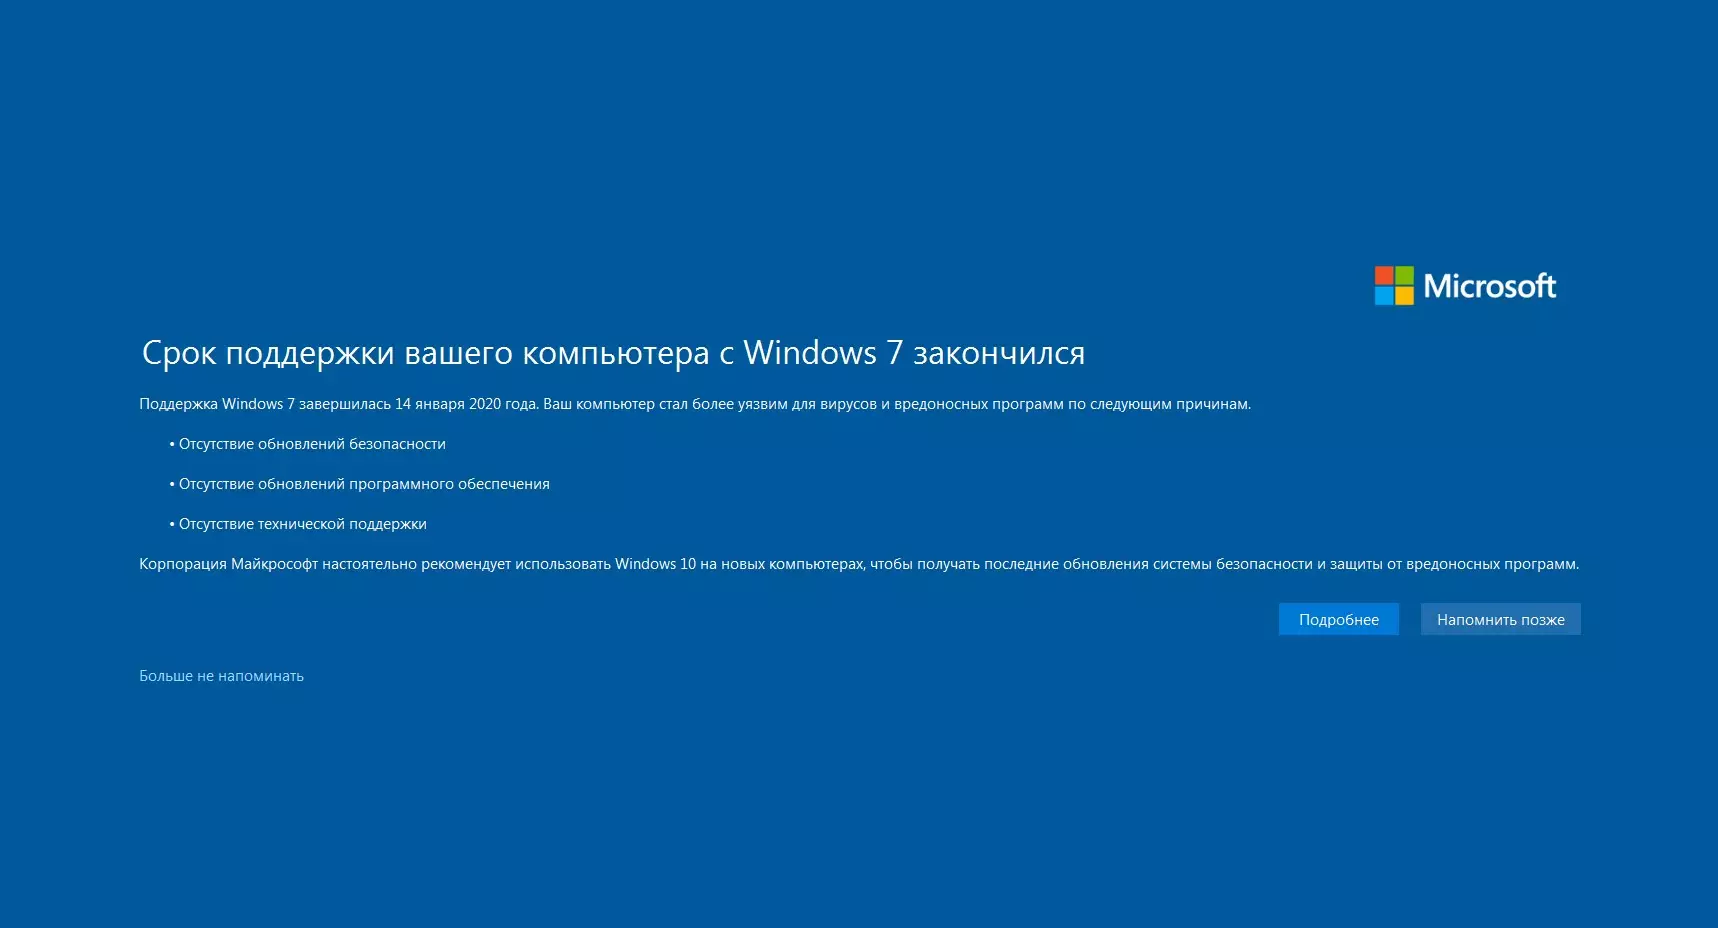 Уведомления, которые получают пользователи Windows 7 после окончания официальной поддержки от Microsoft